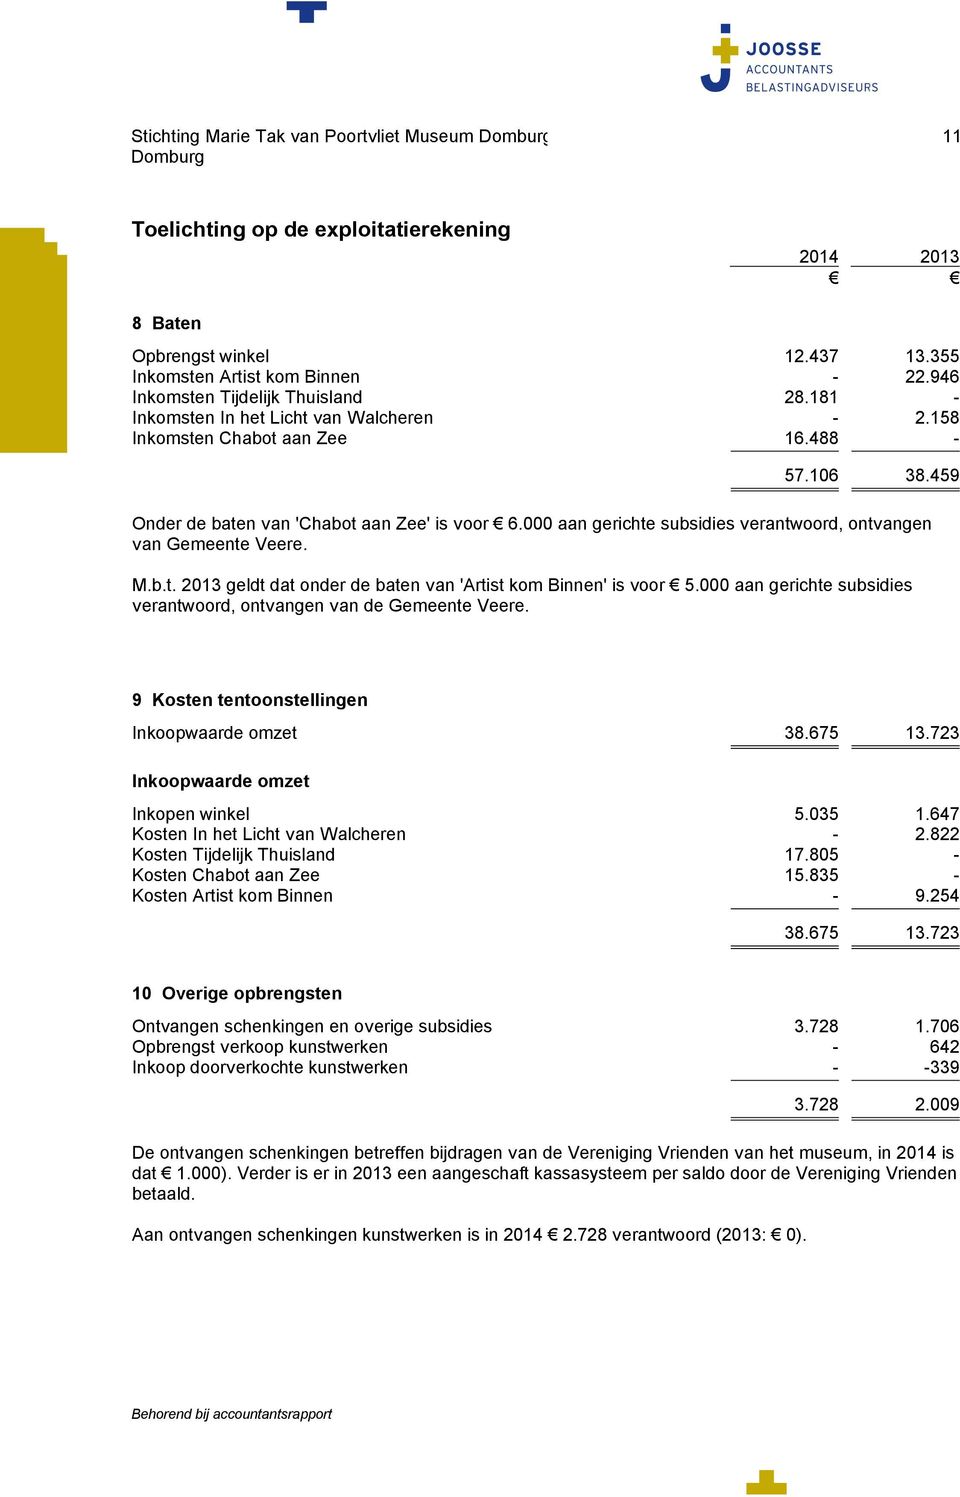 000 aan gerichte subsidies verantwoord, ontvangen van Gemeente Veere. M.b.t. 2013 geldt dat onder de baten van 'Artist kom Binnen' is voor 5.